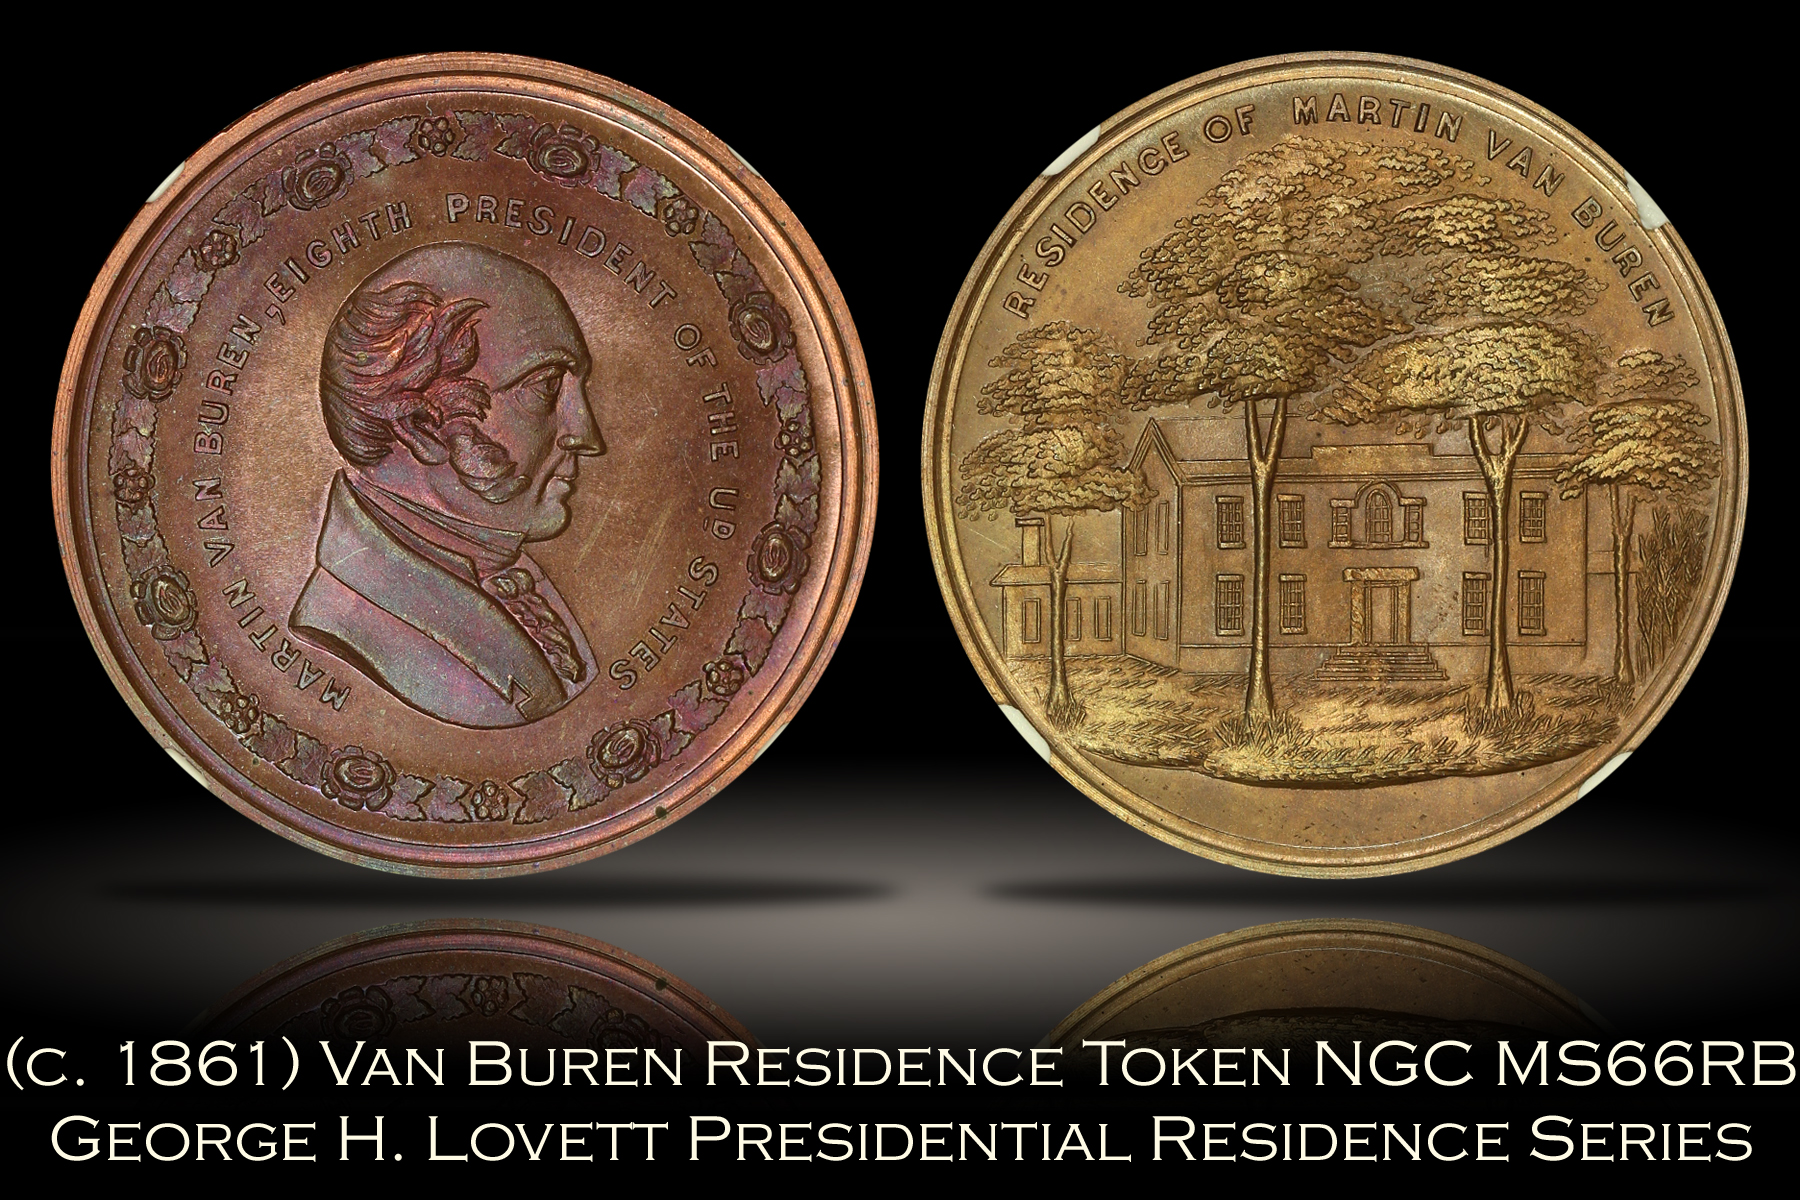 (c. 1861) Martin Van Buren Presidential Residence Lovett Token NGC MS66RB